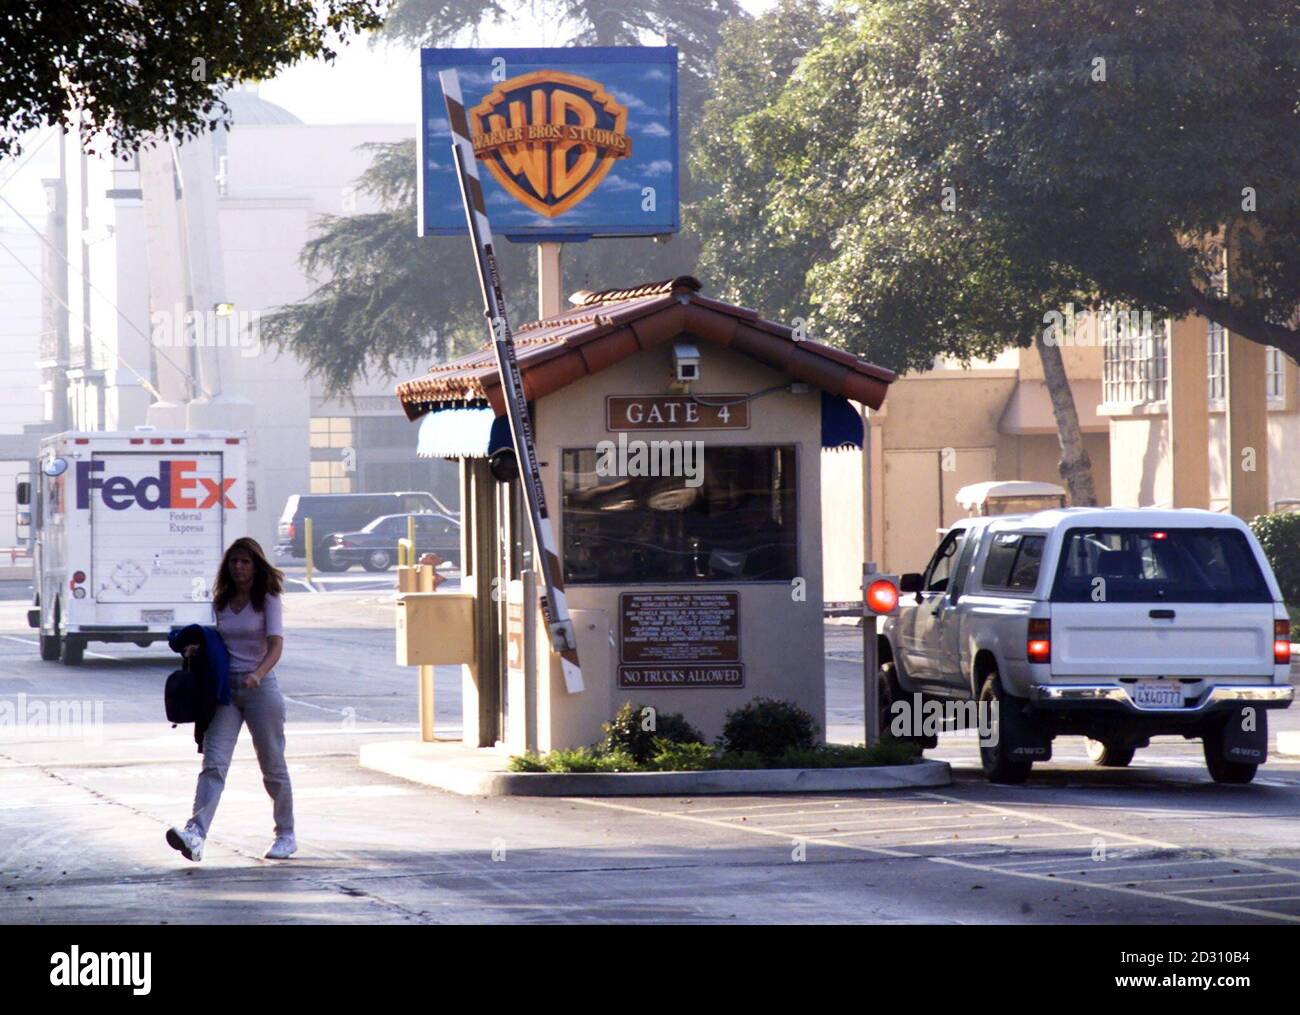 Das Haupttor der Warner Bros.-Studios in Burbank, Kalifornien in diesem März 2000 gesehen ist Datei Foto. Warner Bros., Film und Fernsehen-Studio prüft seine Kosten mit einem Auge in Richtung trimmen ihres Haushalts nächstes Jahr als Bestandteil ein normaler Prozess, den sie jährlich verpflichtet sich und es, war zu früh, zu wissen, ob Entlassungen aufgrund der Überprüfung auftreten würde, eine Studio-Sprecherin sagte, 18. Oktober 2005. REUTERS/Rose Prouser/Datei Stockfoto